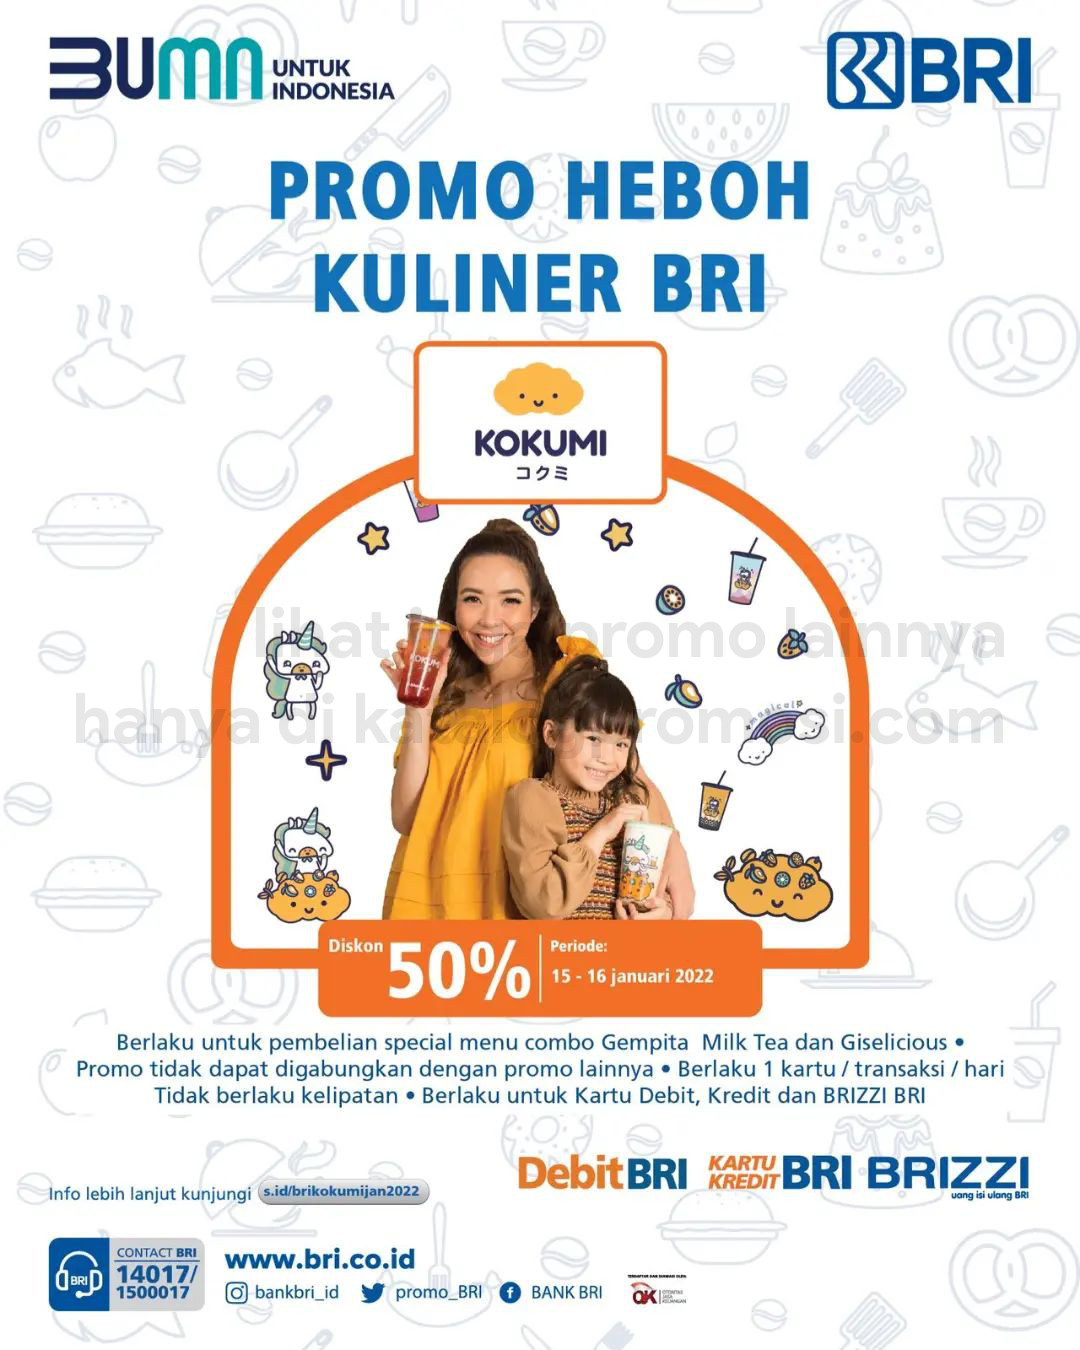 Promo KOKUMI Heboh Kuliner BRI! Diskon 50% untuk pembelian Bundling Giselicious dan Gempita Milk Tea dengan KARTU BRI